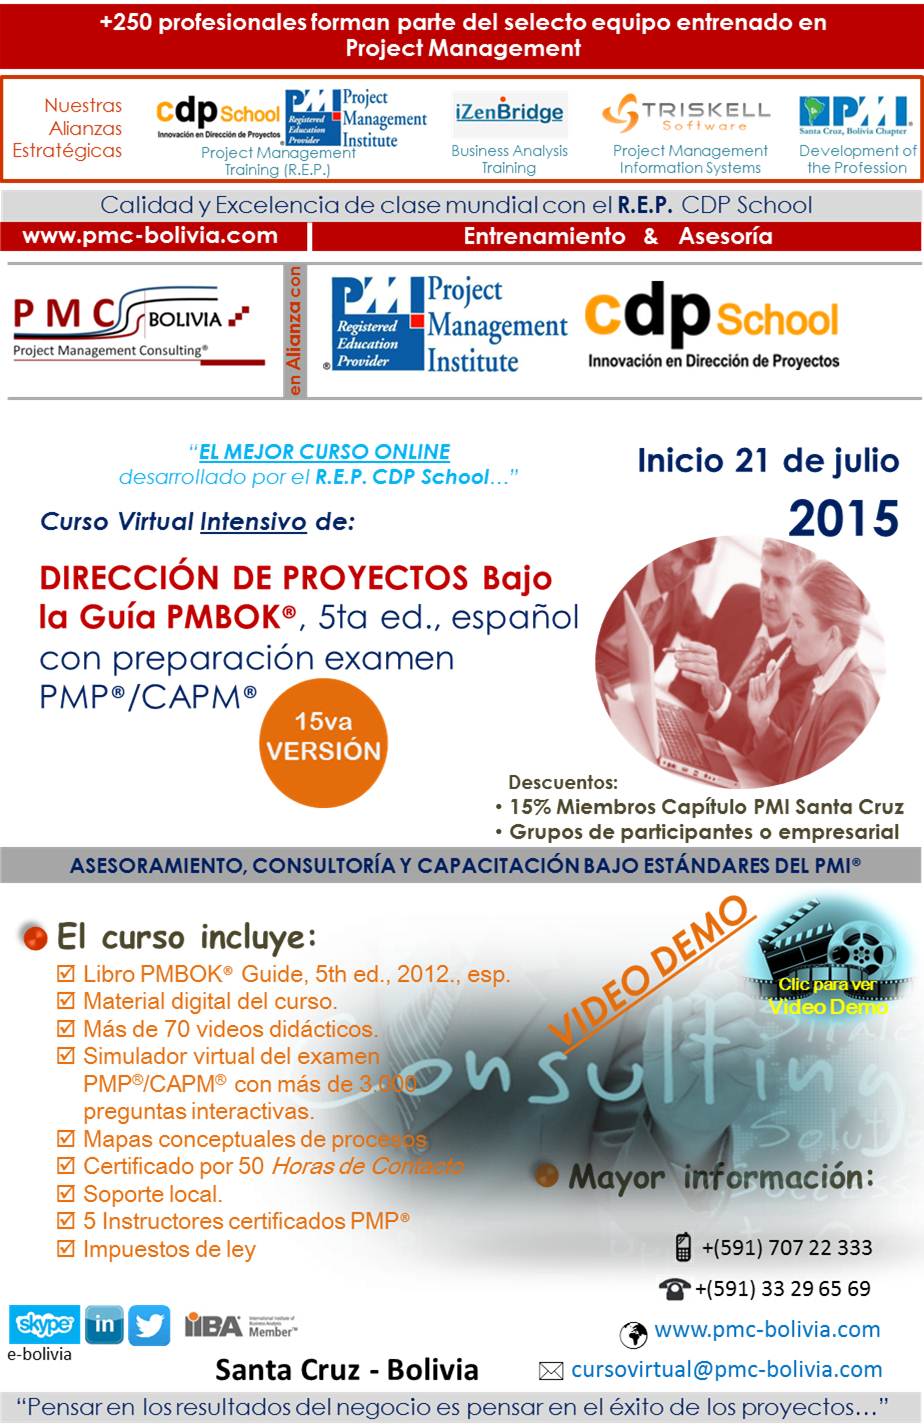 Arte publicidad curso PMC-BOLIVIA - jul 2015